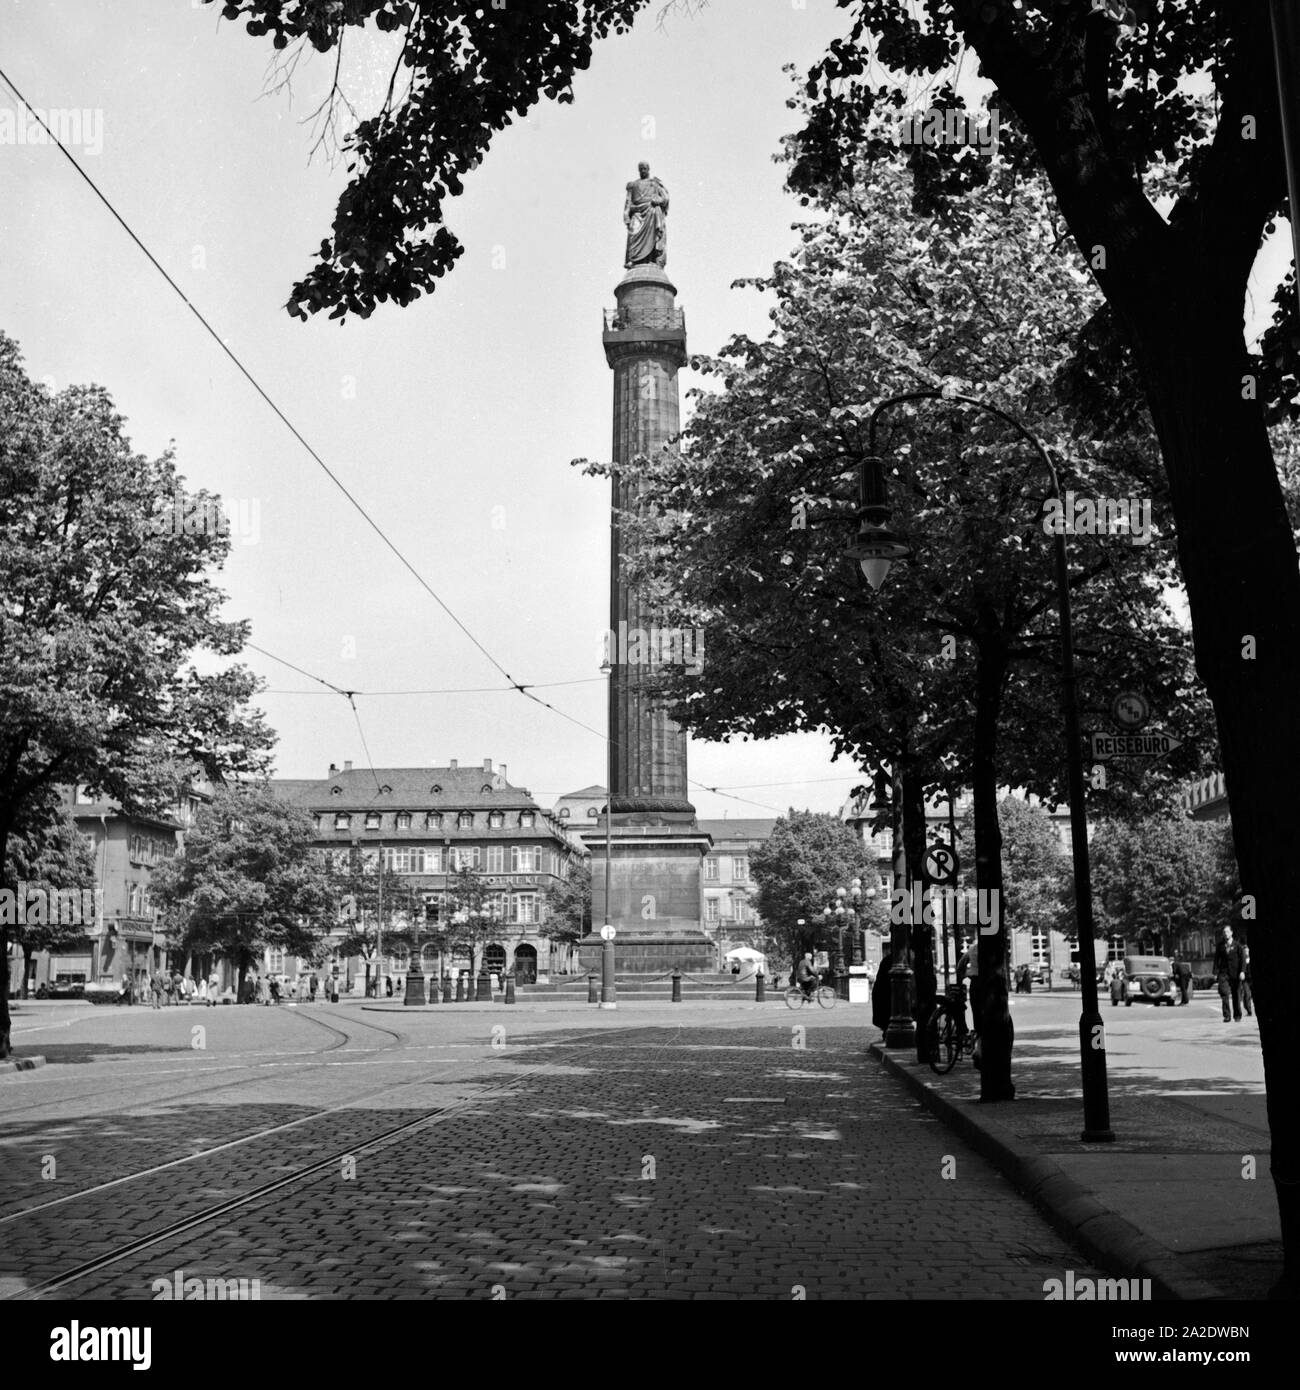 Die Ludwigssäule auf dem Luisenplatz in Darmstadt, Deutschland 1930er Jahre. Ludwig's column at Luisenplatz square at Darmstadt, Germany 1930s. Stock Photo